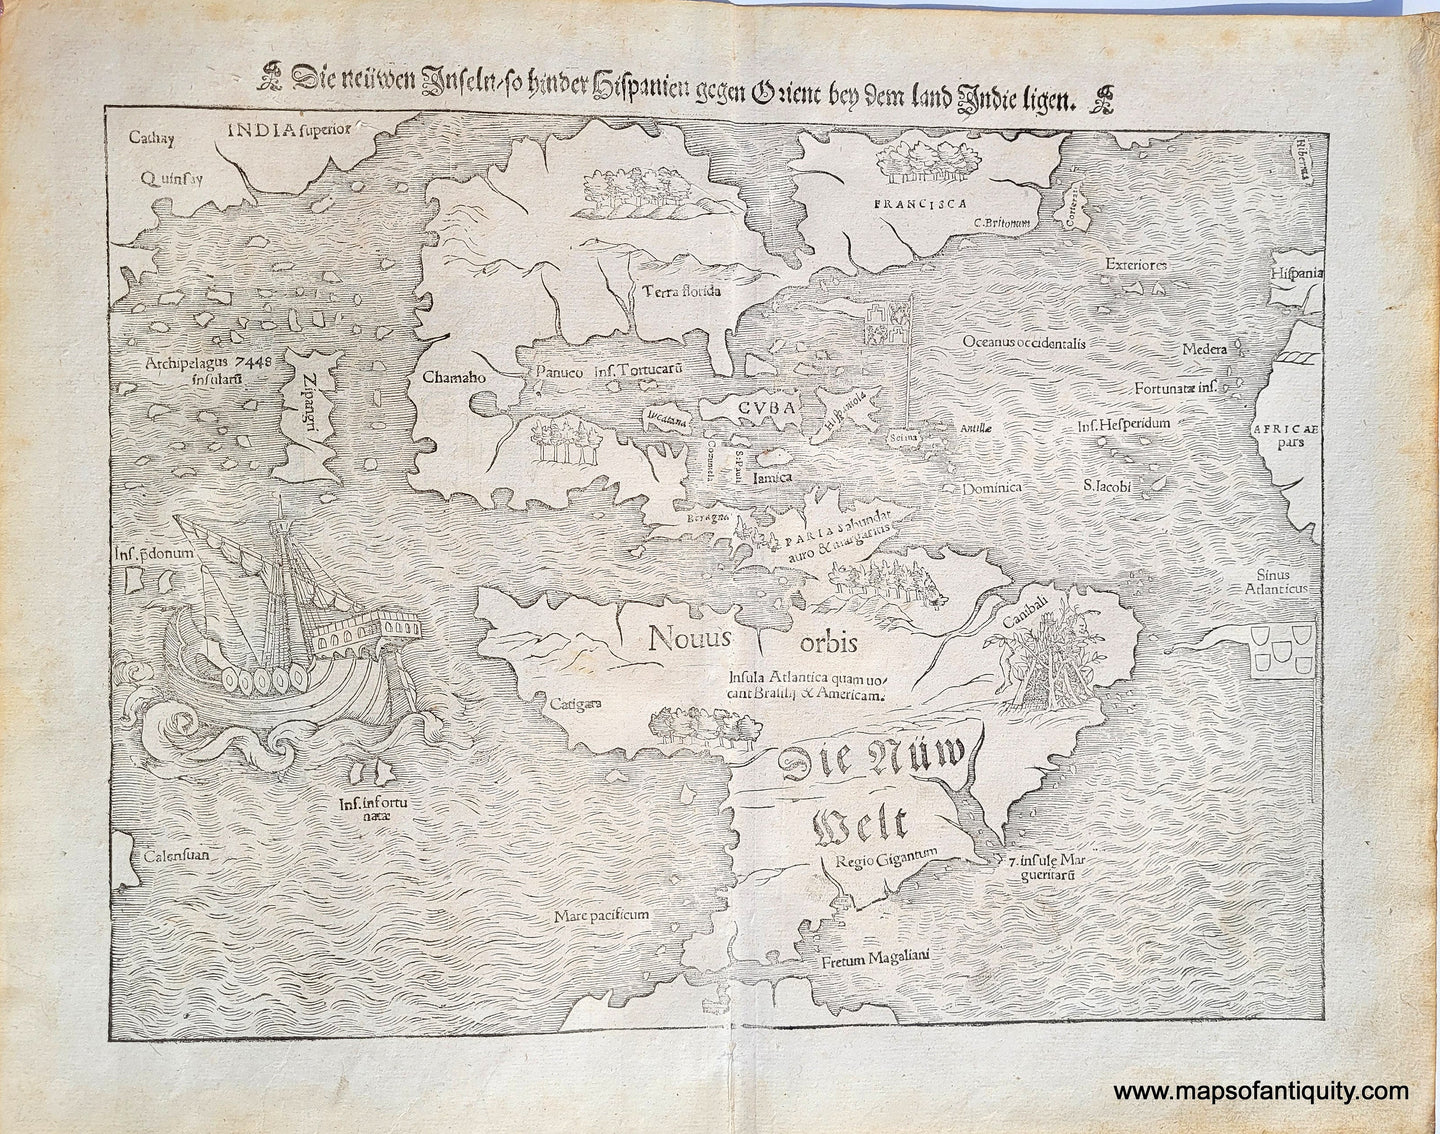 Genuine-Antique-Map-Die-Neuwen-Inseln-So-hinder-Hispanien-gegen-Orient-ven-dem-land-Indie-ligen-1550-Munster-Maps-Of-Antiquity